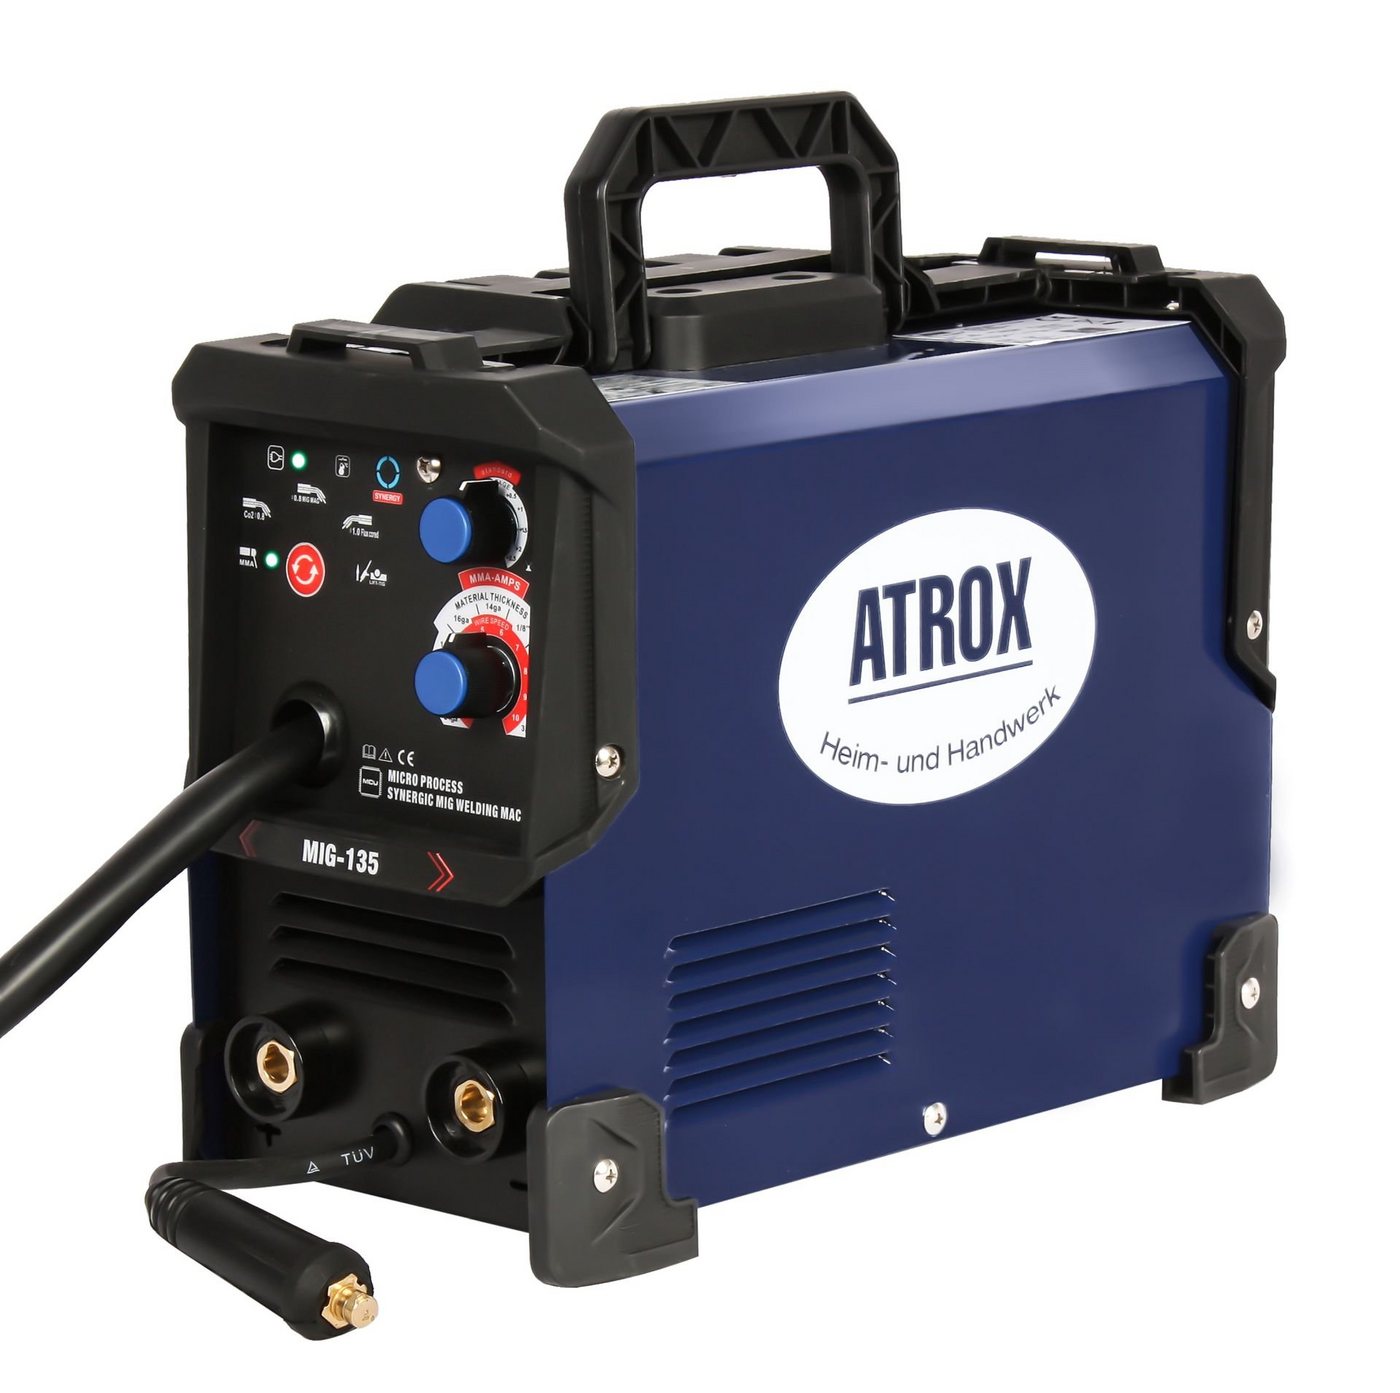 Atrox Elektroschweißgerät ATROX 5-in-1 Kombi-Schweißgerät inkl. viel Zubehör, 20,00 - 135,00 A, 5 Schweißverfahren: MIG, MAG, FCW, MMA, TIG lift von Atrox